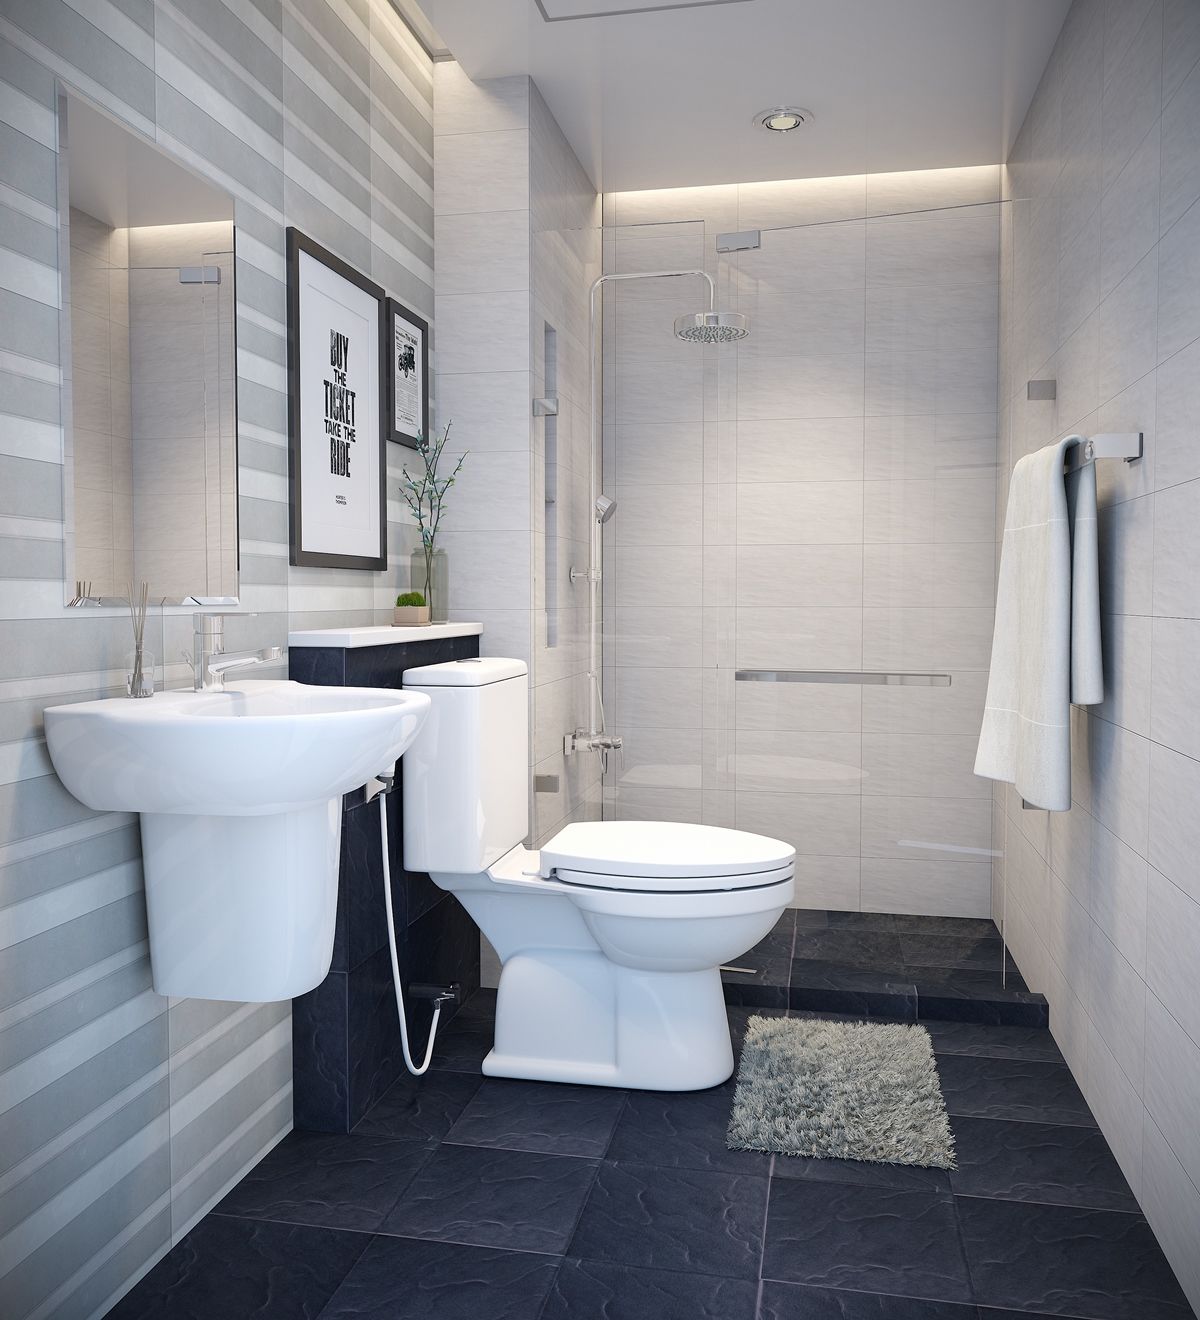 Với không gian phòng tắm nhỏ của bạn, việc thiết kế phòng tắm nhỏ đẹp tinh tế 3m2 là điều vô cùng quan trọng. Với sự kết hợp giữa màu sắc, ánh sáng và trang trí, không gian phòng tắm của bạn sẽ trở nên đầy tiện nghi và đẹp mắt. Cùng khám phá hình ảnh thiết kế phòng tắm nhỏ đẹp tinh tế 3m2 để tận hưởng không gian ấm cúng và sang trọng.